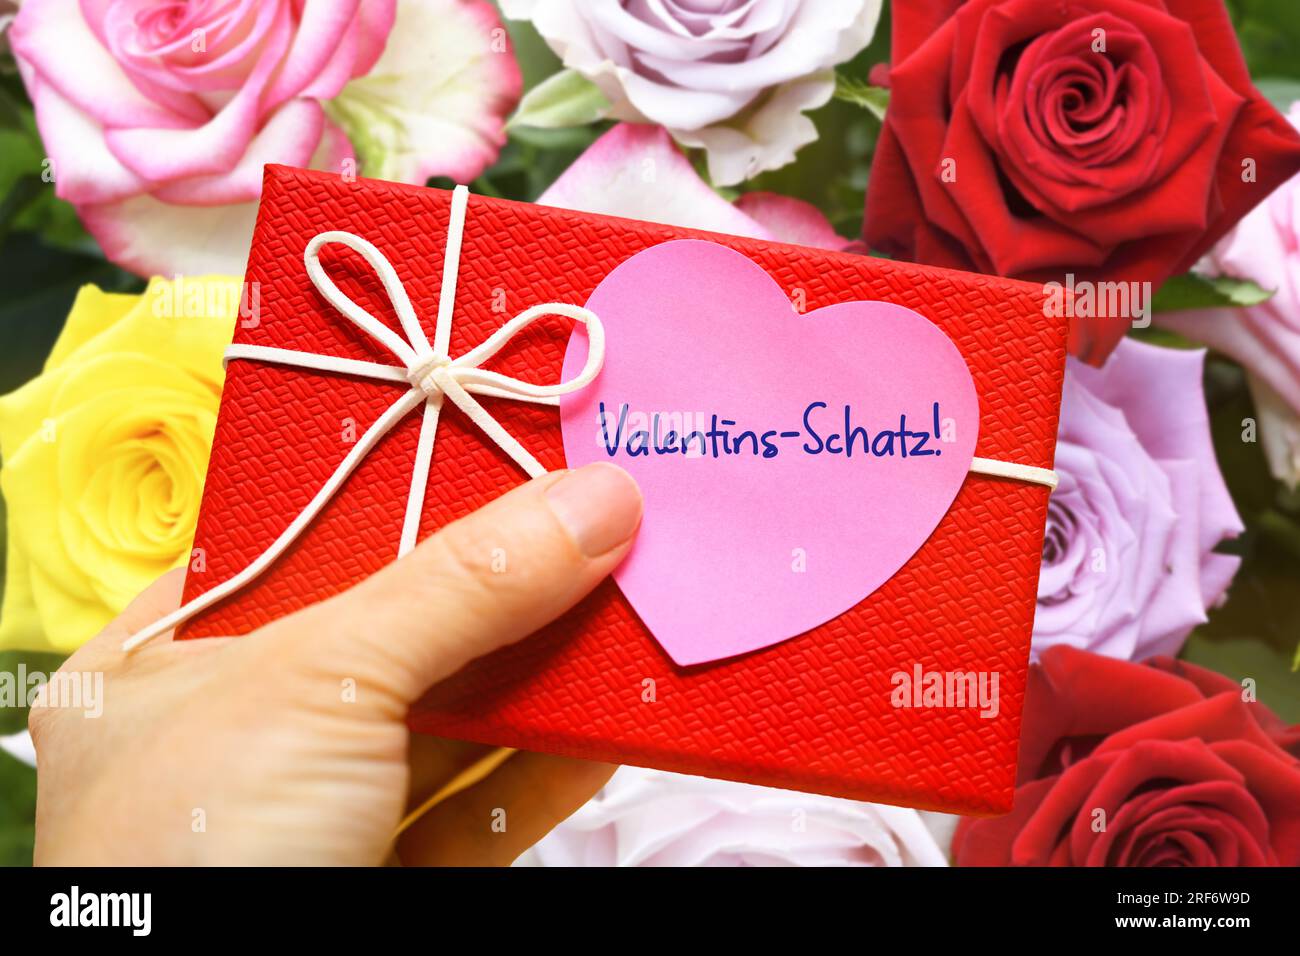 FOTOMONTAGE, Hand hält Geschenk mit einem herzförmigen Zettel und der Aufschrift Valentins-Schatz vor einem Blumenstrauß Stock Photo